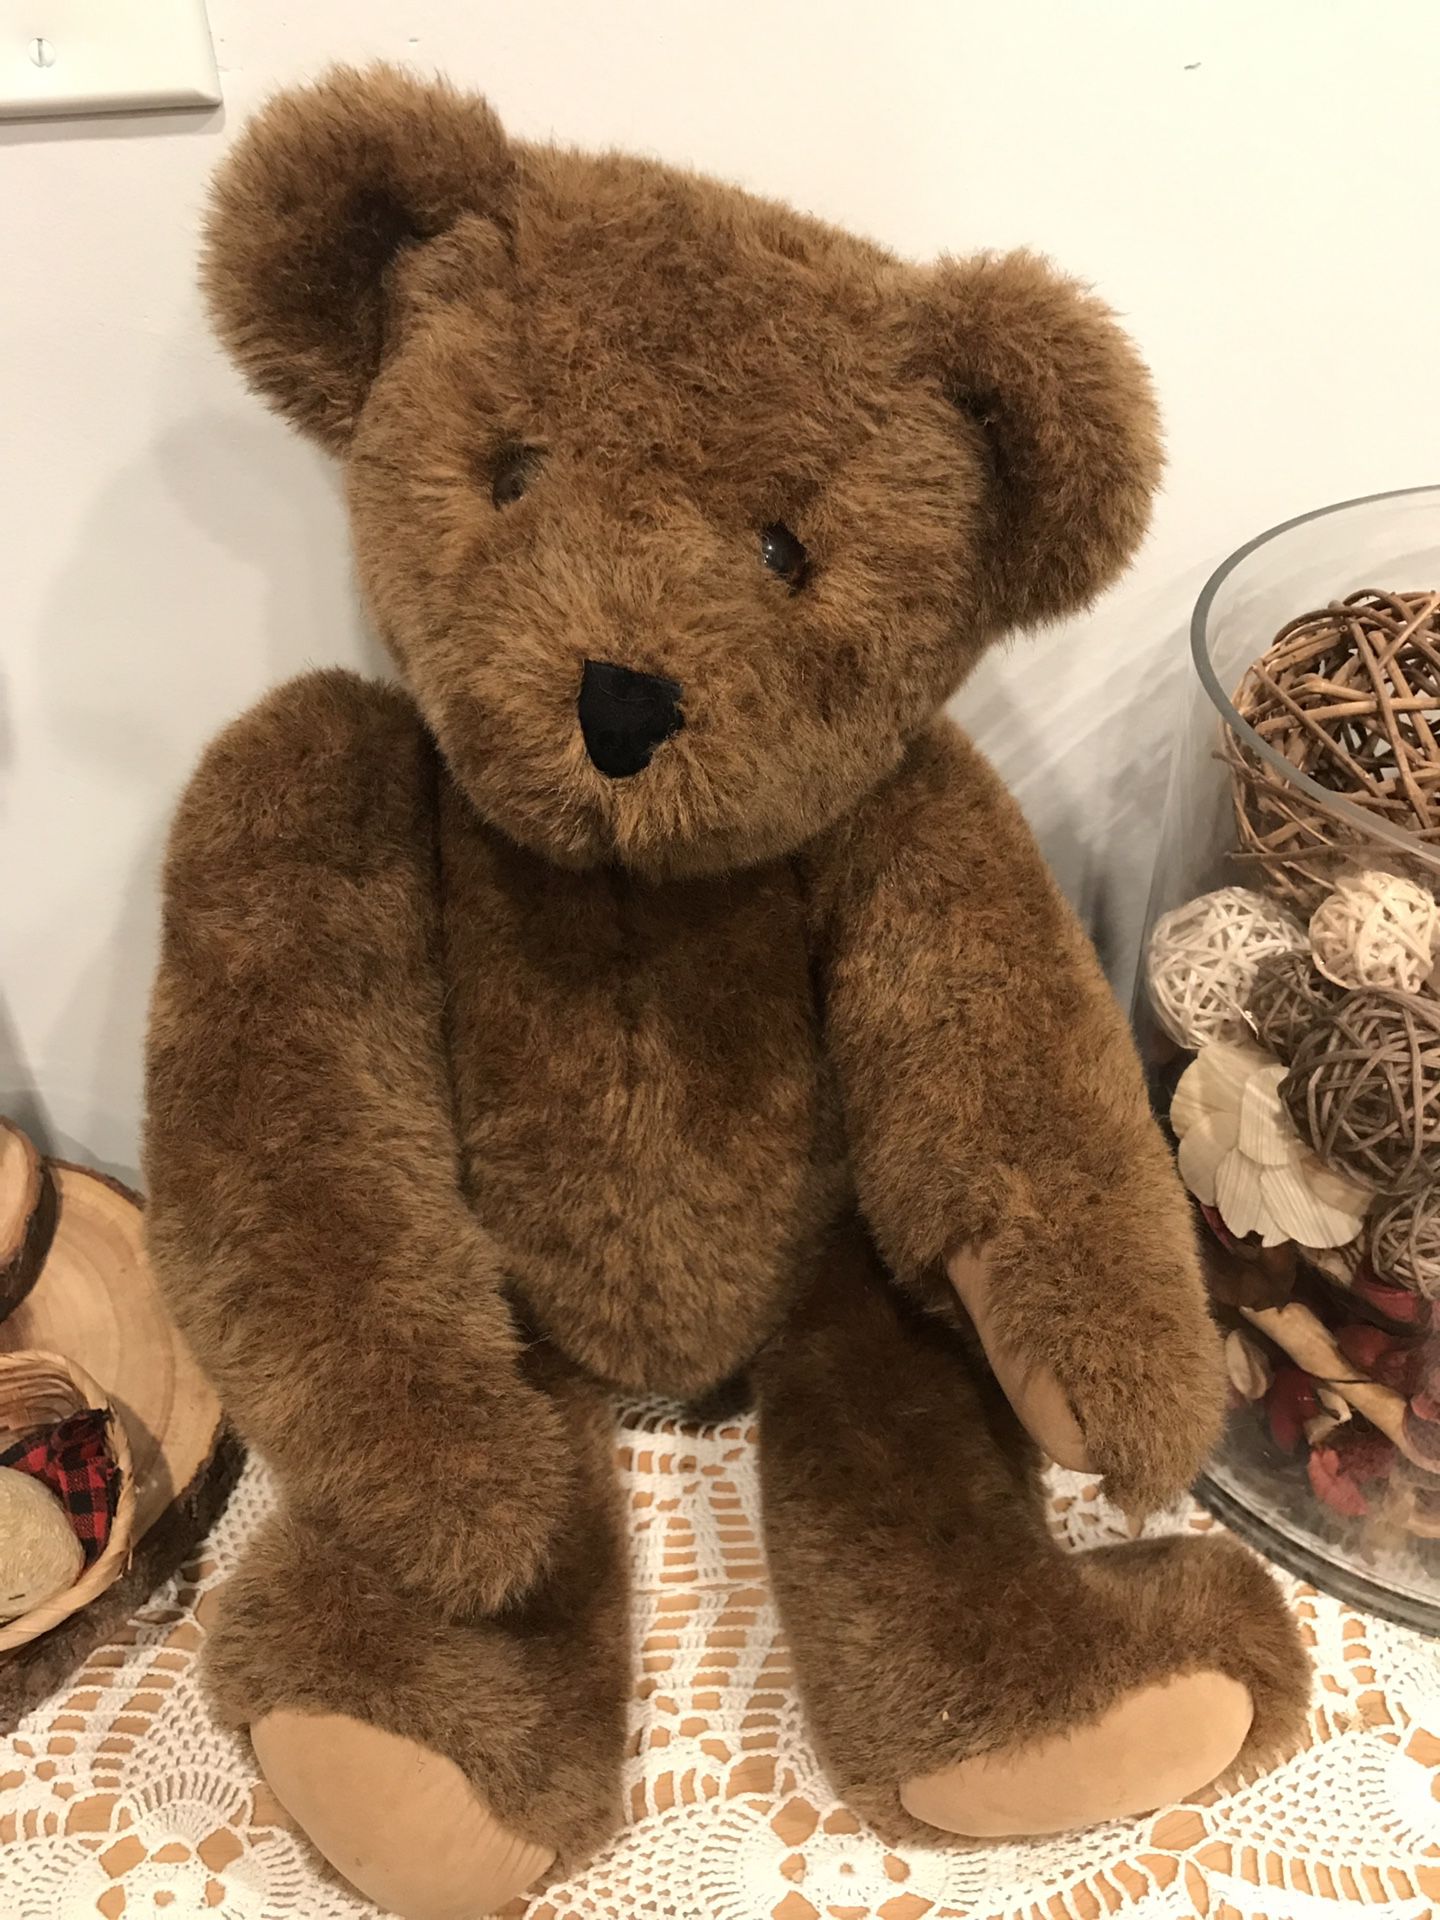 Teddy bear head turns arms legs move